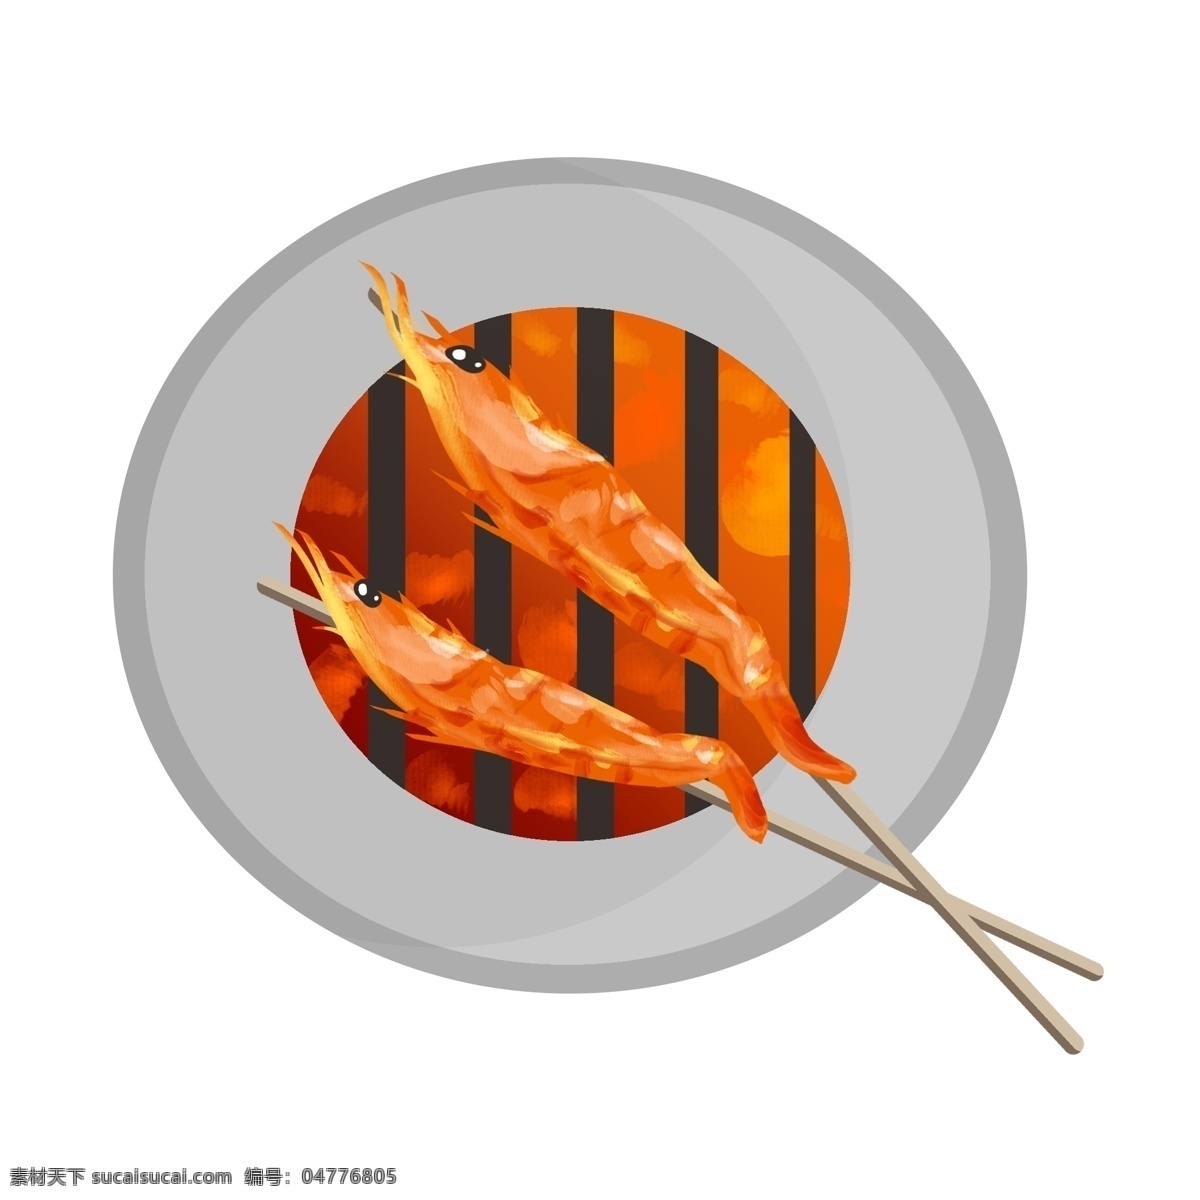 美味 烤 龙虾 插画 食物插画 卡通食物插画 食物 烧烤食物 美味的烤串 烤龙虾 好吃的烤串